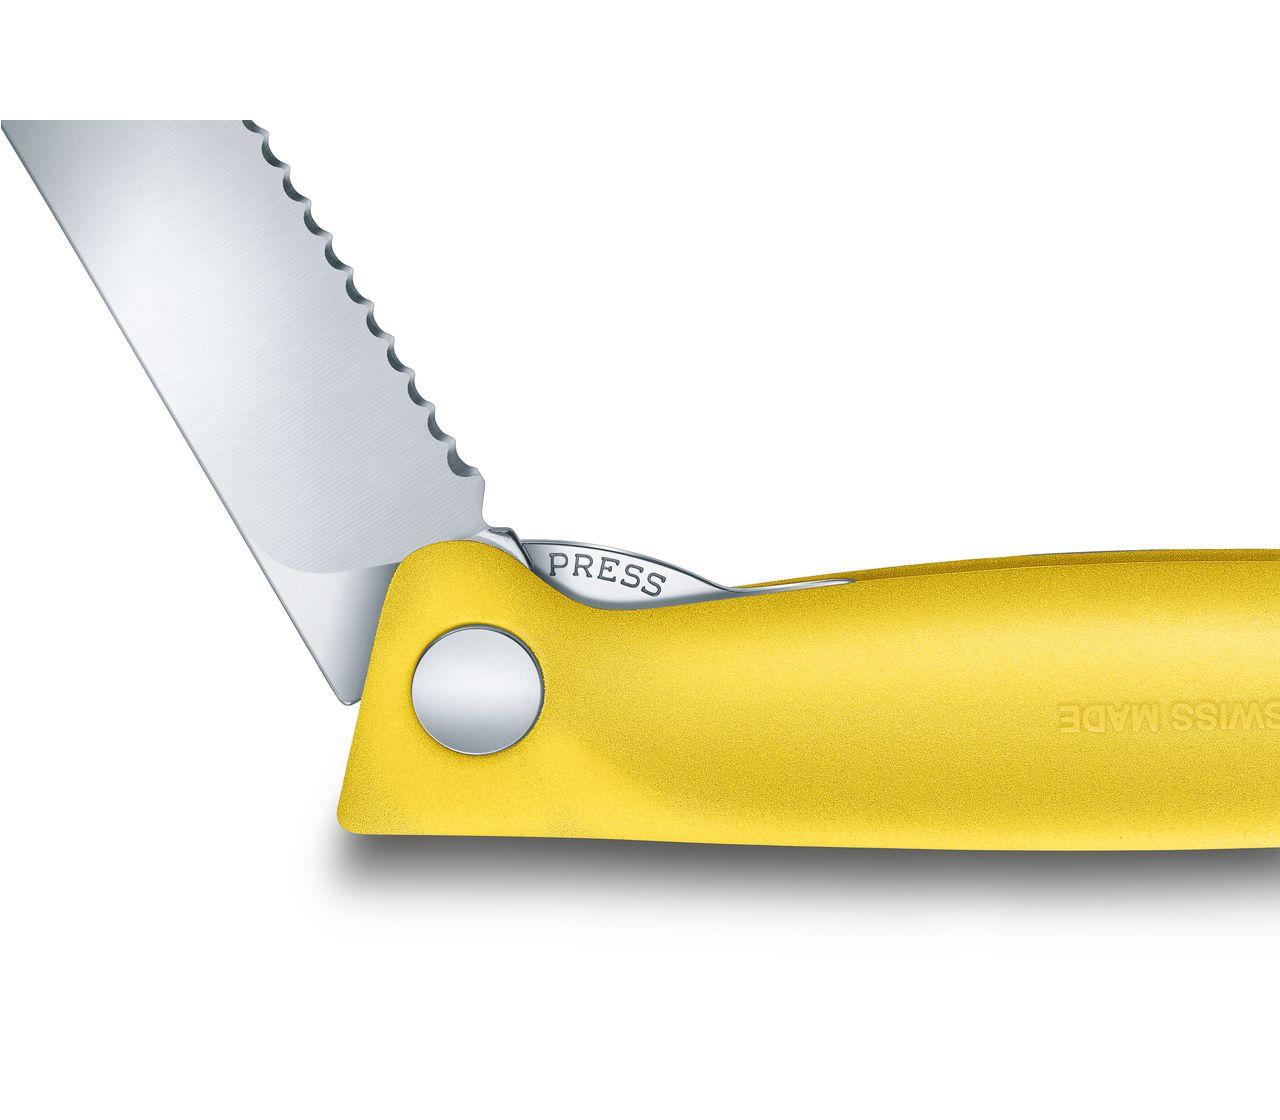 Swiss Classic Picnic Knife-6.7836.F8B